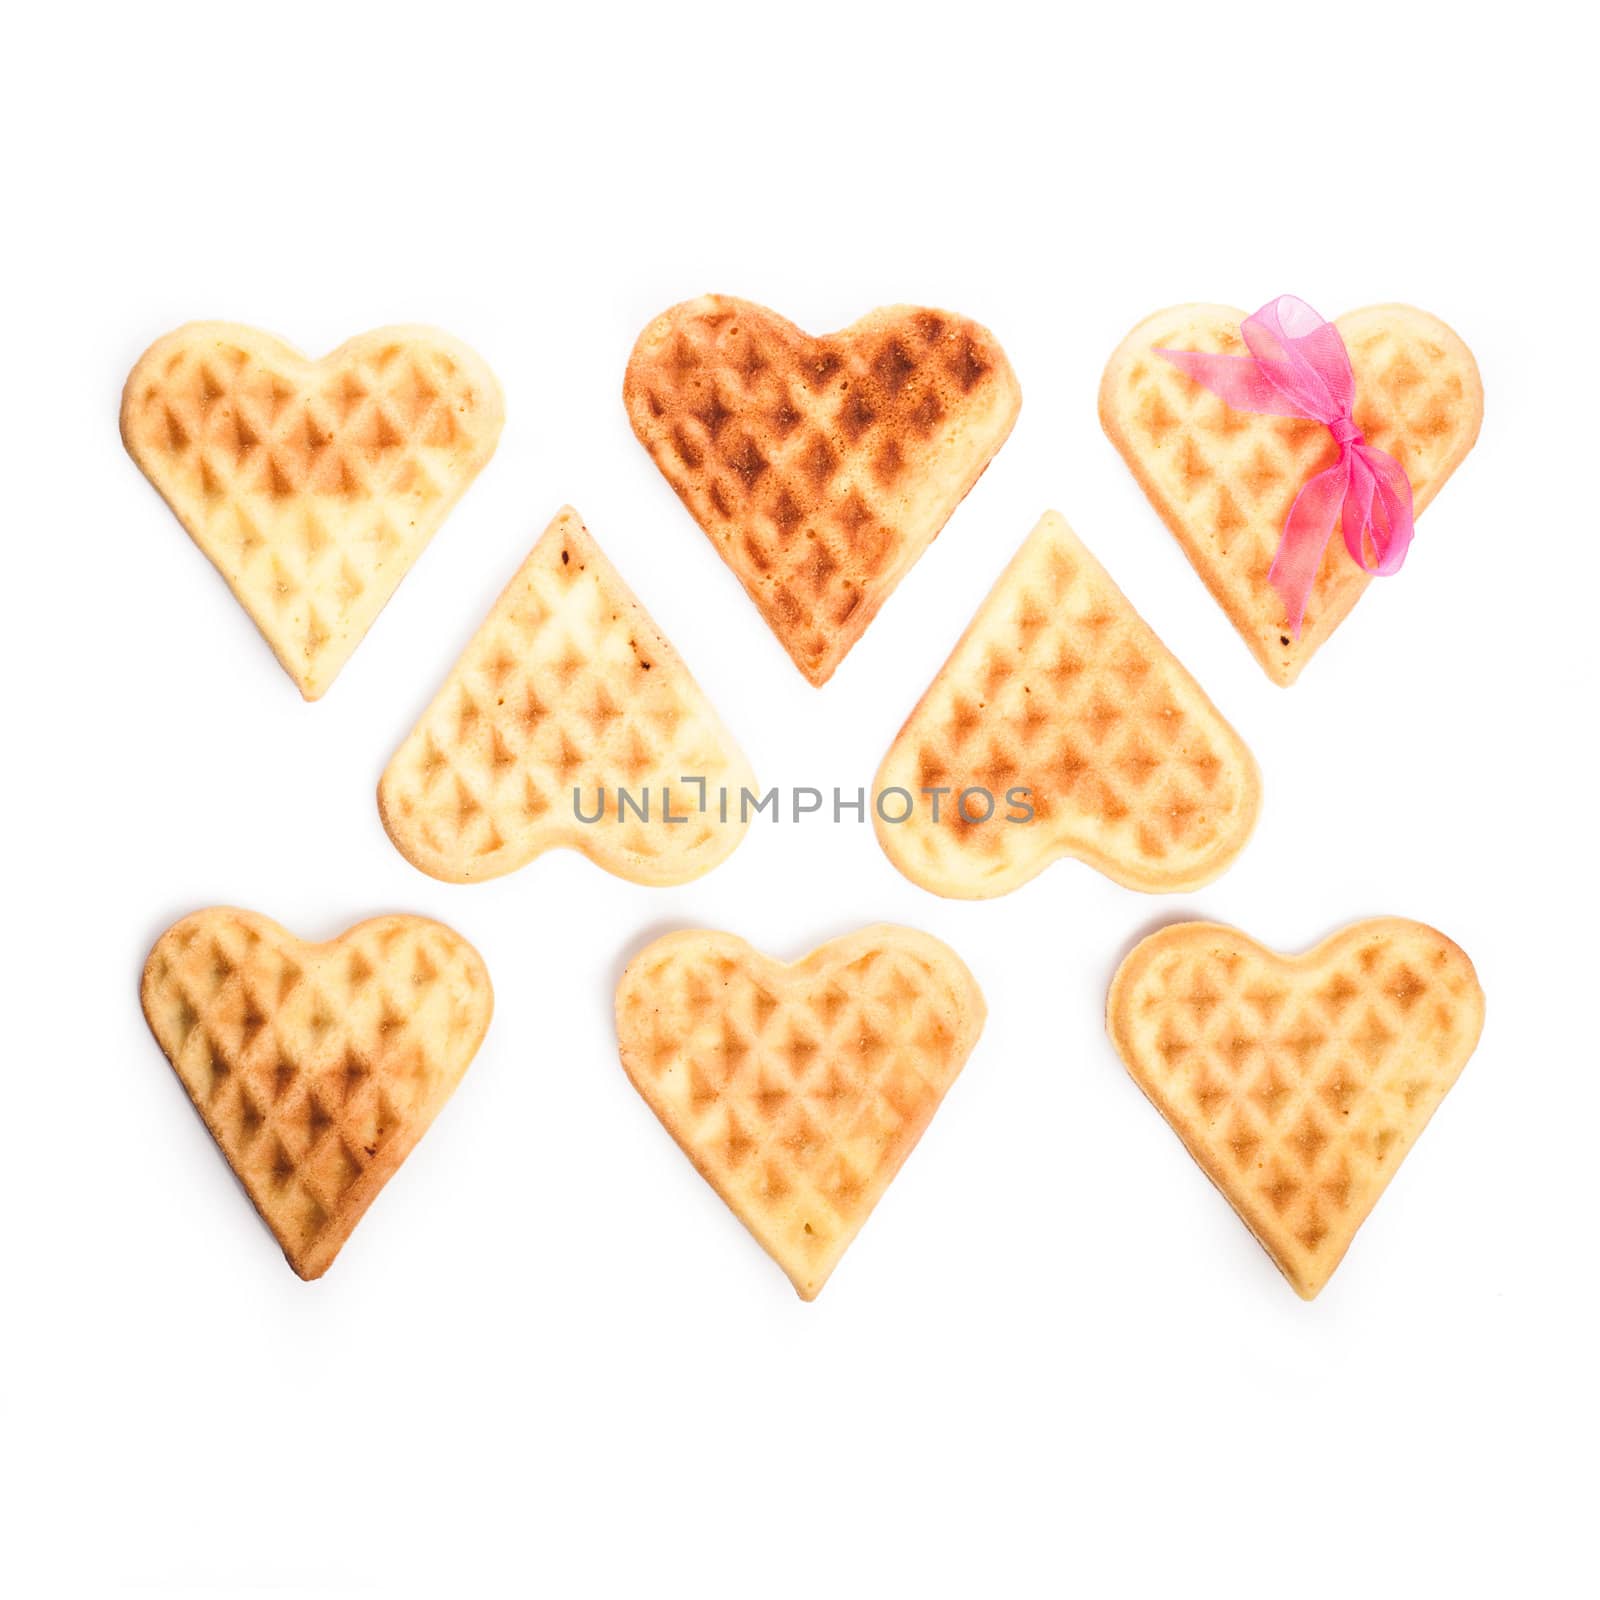 Heart shaped waffles isolated on white background